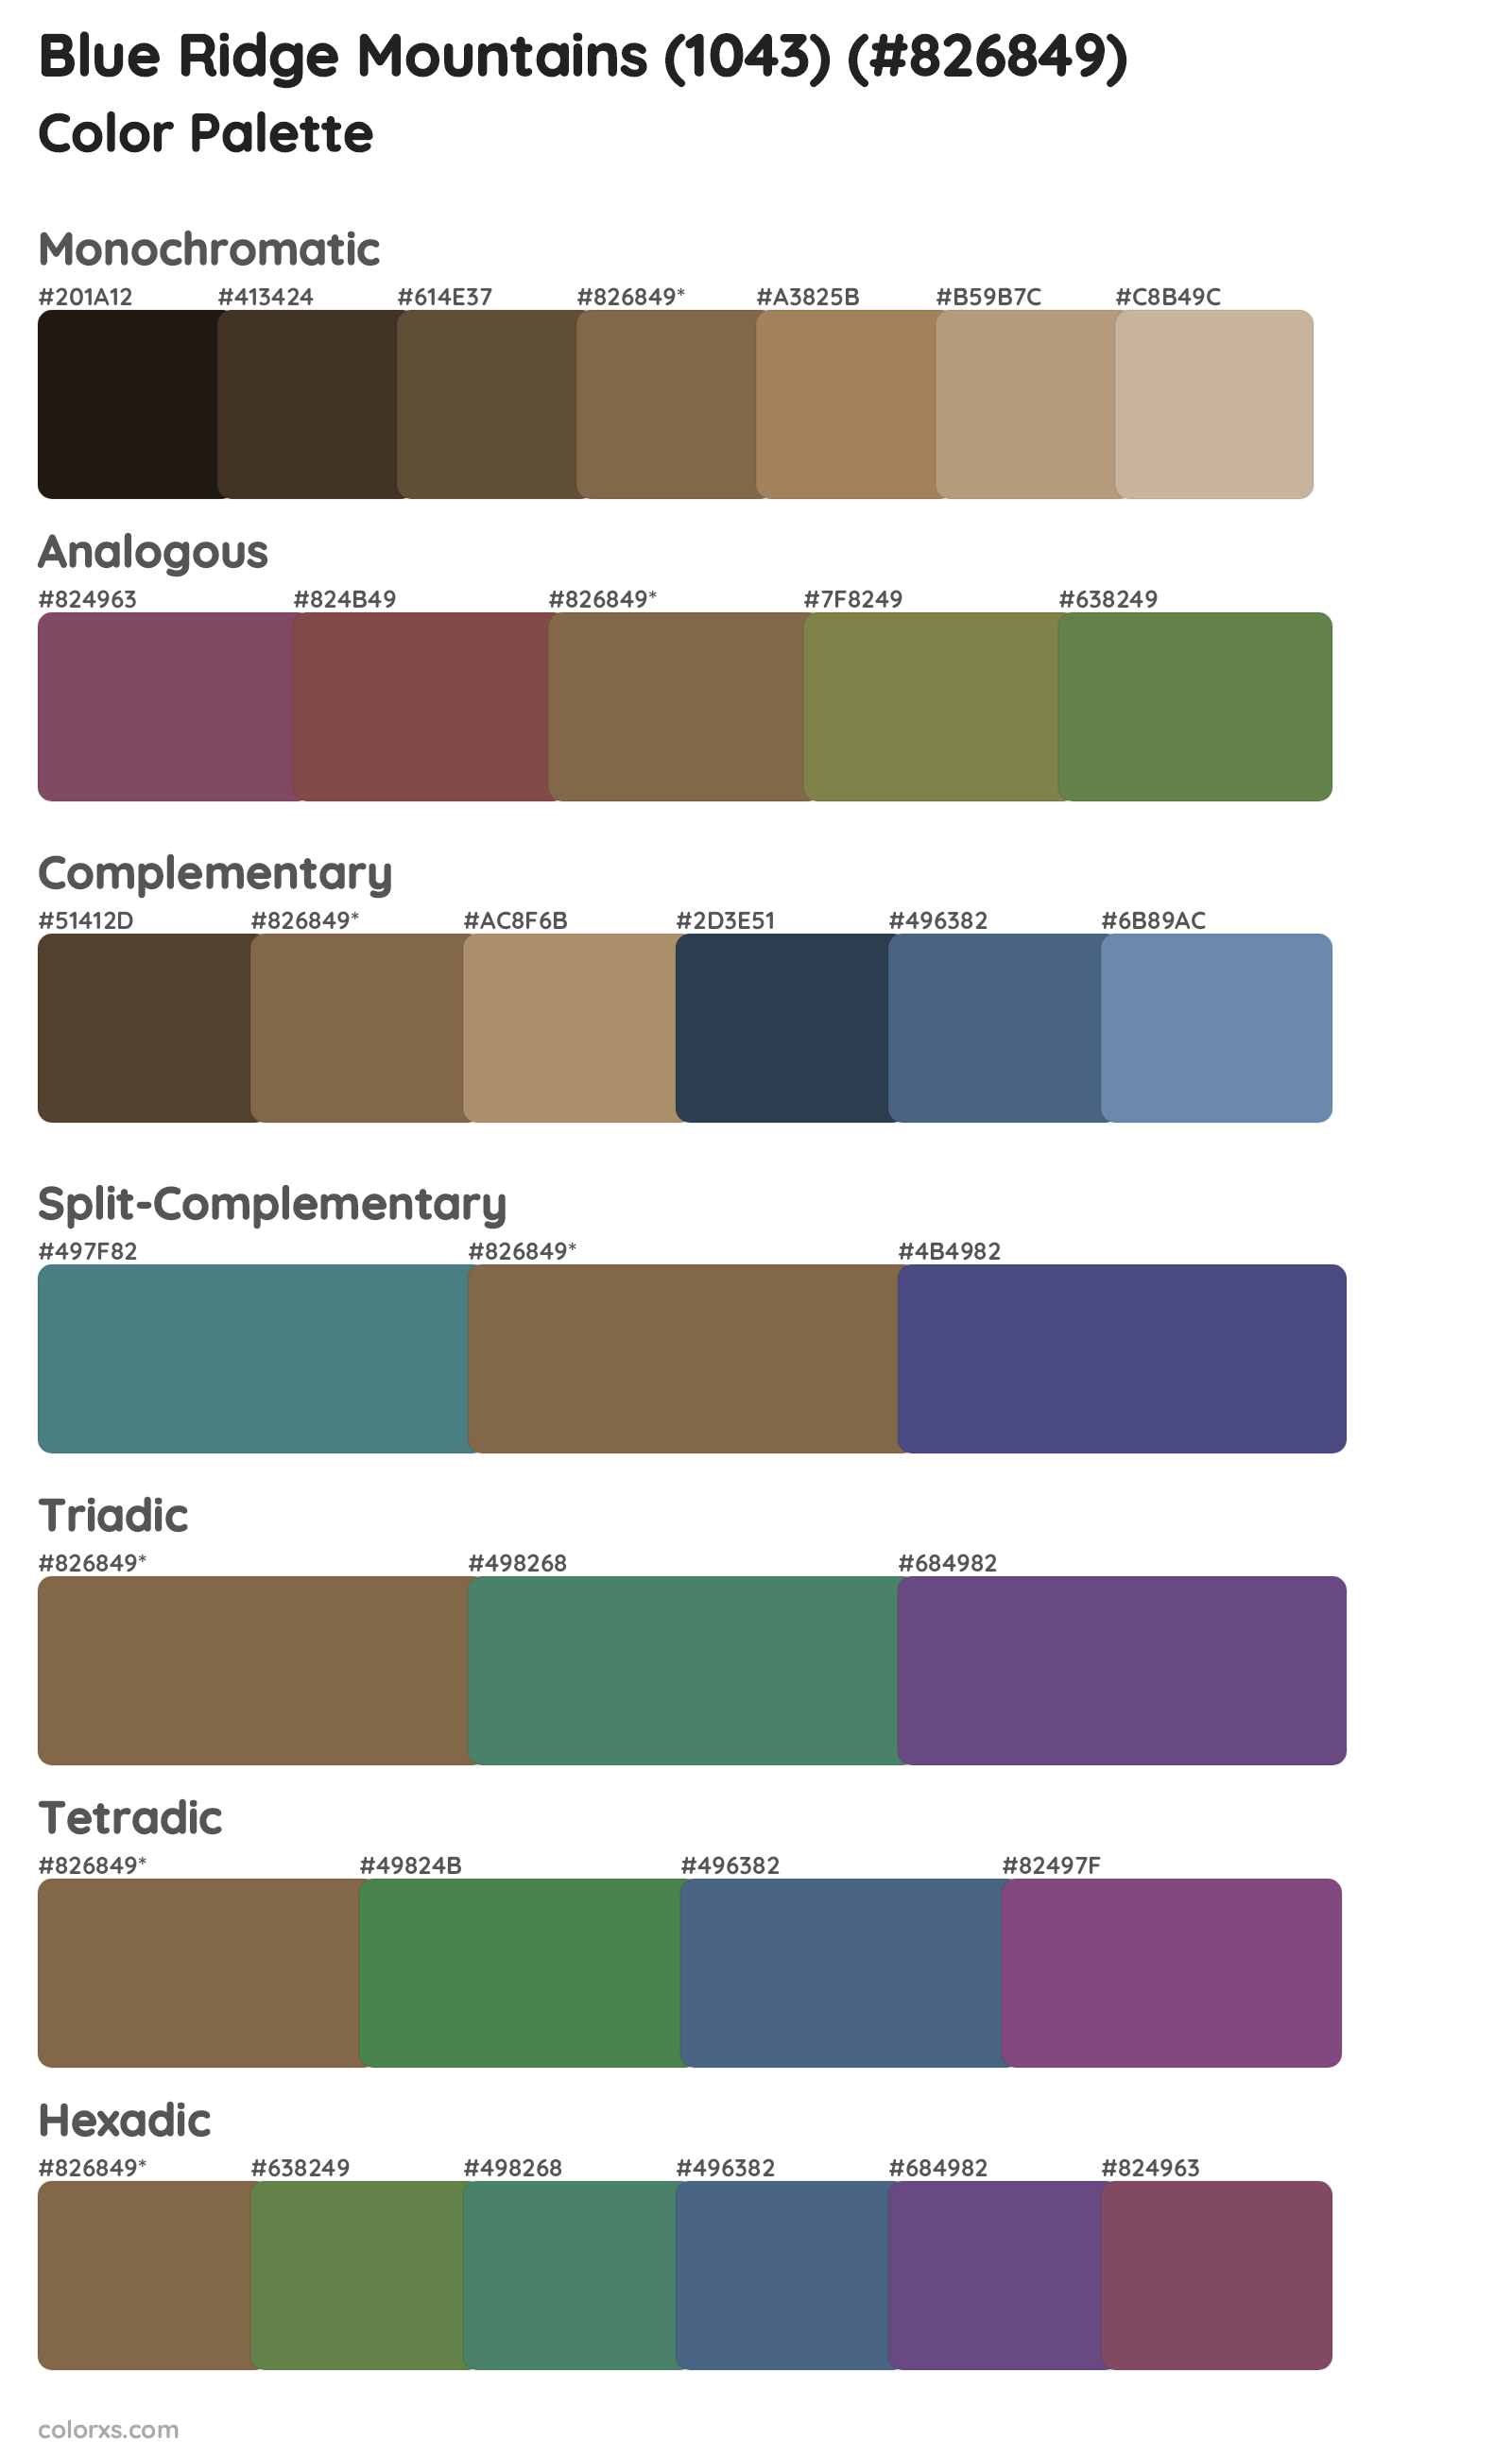 Blue Ridge Mountains (1043) Color Scheme Palettes